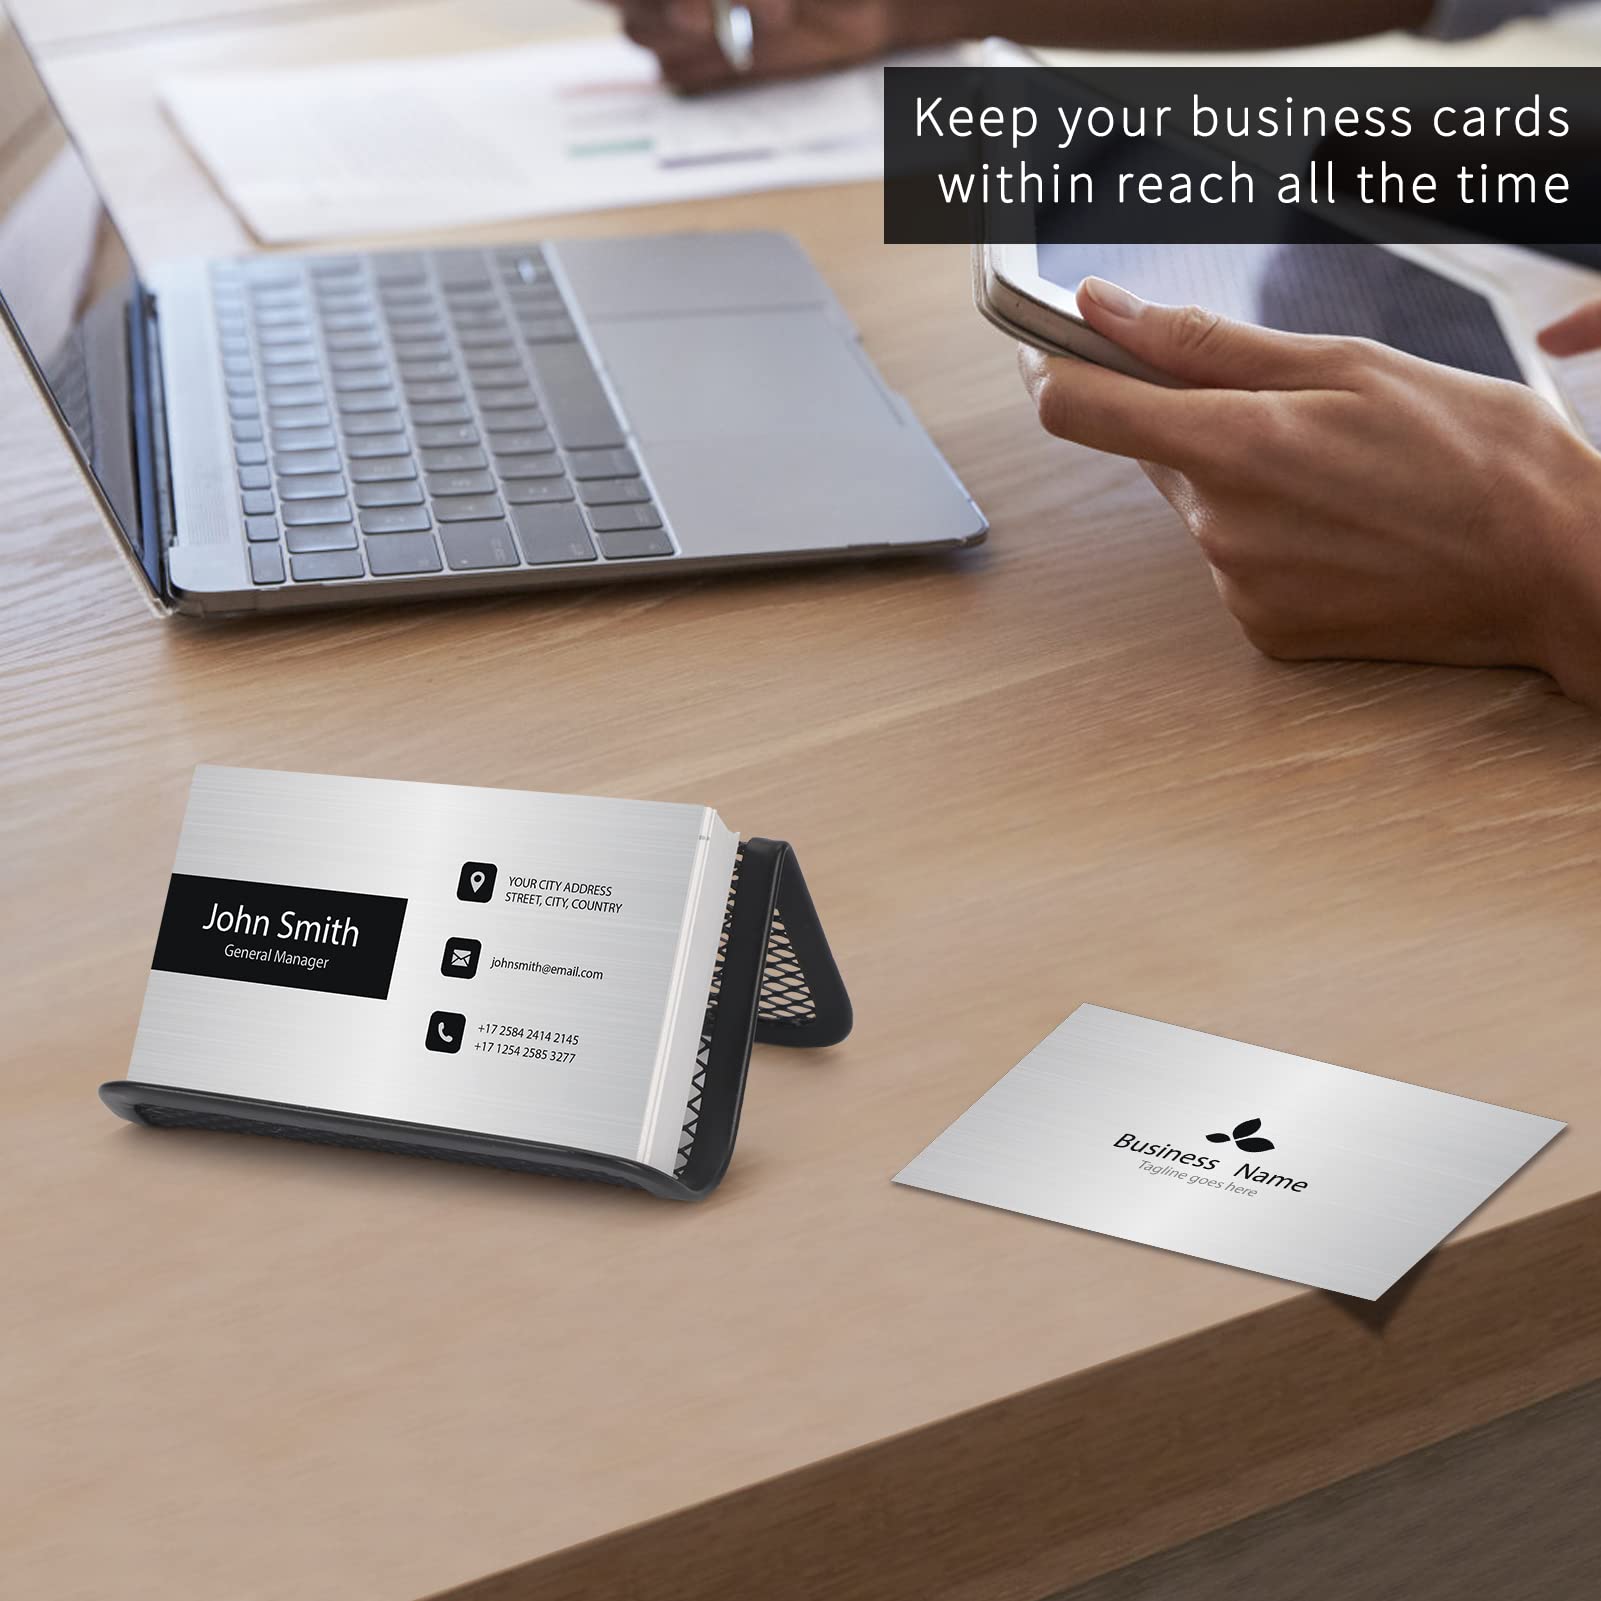 WWW Metal Business Card Holder for Desk,6 Pack Desktop Name Card Organizer Business Card Display Holders,Premium Card Holder for Office-Black